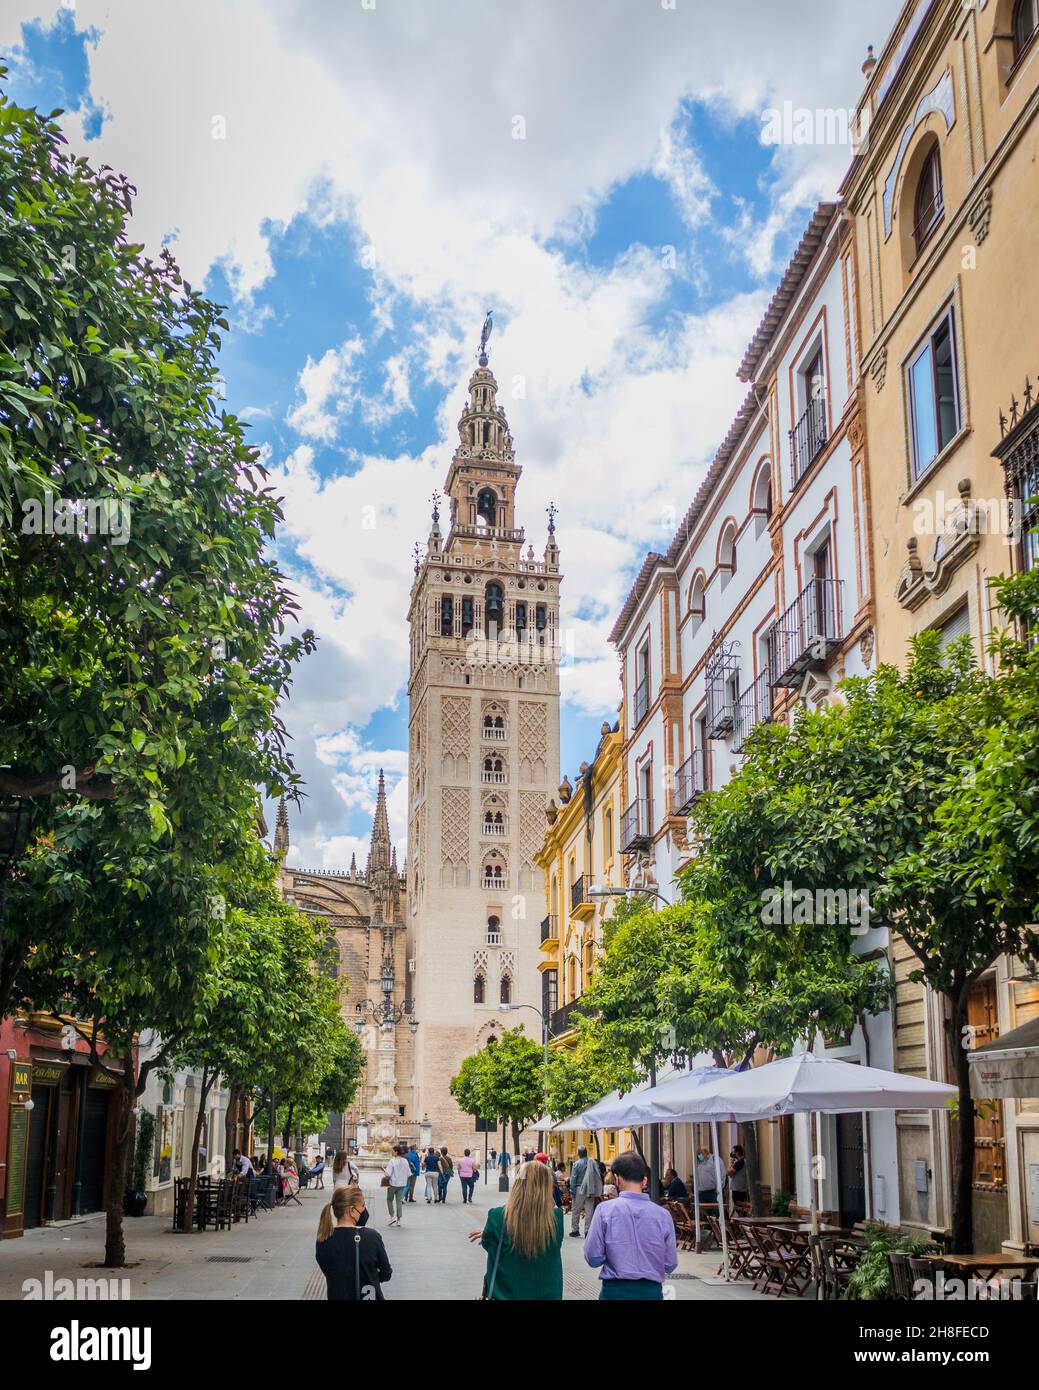 Vista della Giralda da una delle strade del quartiere Santa Cruz di Siviglia. Un'icona del turismo in Spagna. Foto Stock